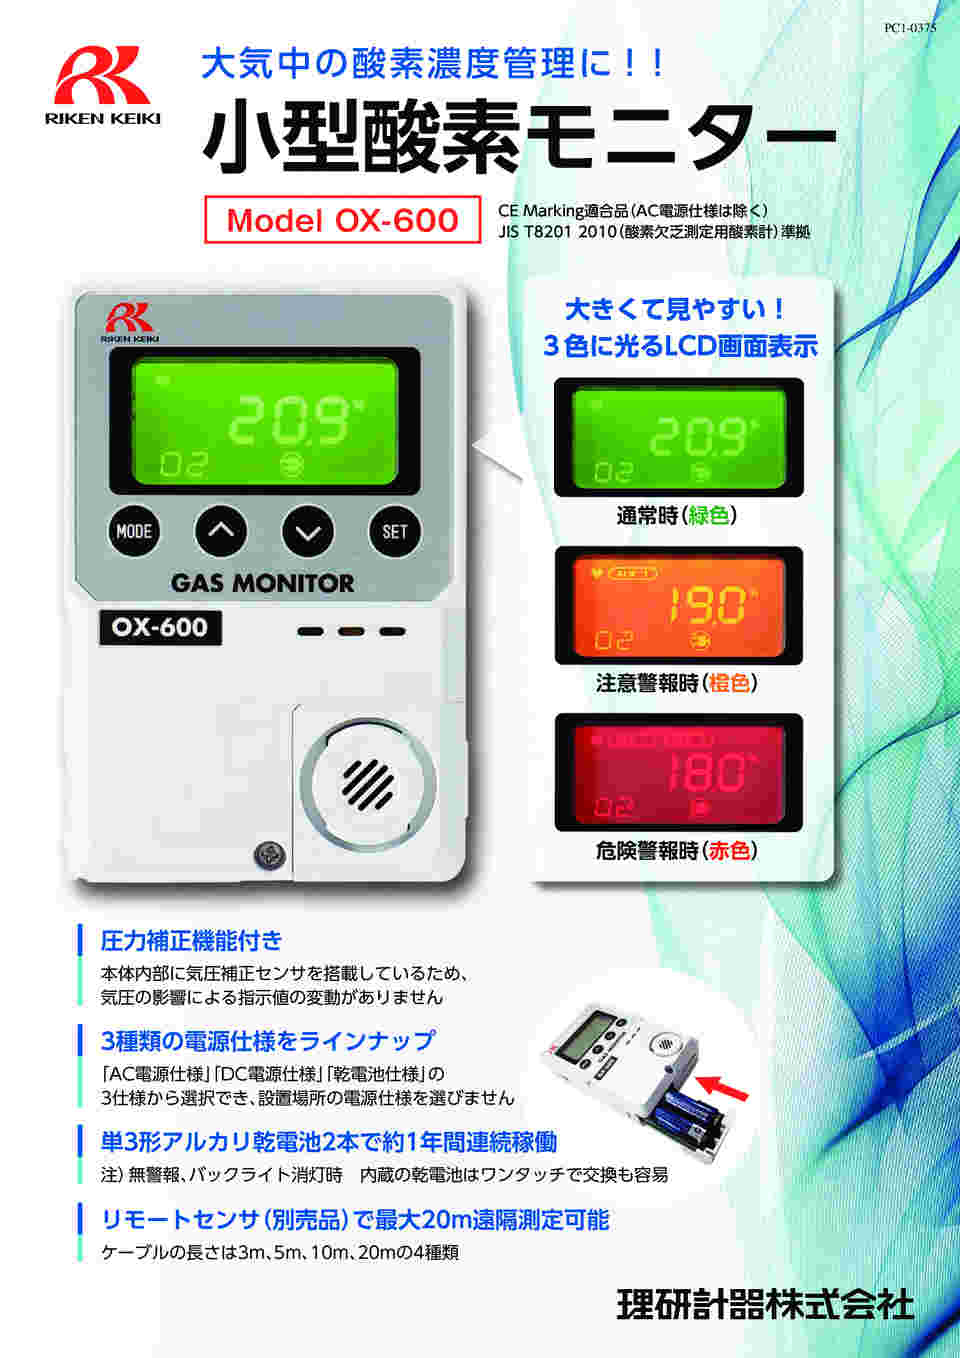 タスコ TASCO 携帯ガス検知器(酸素) TA470JA - 道具、工具